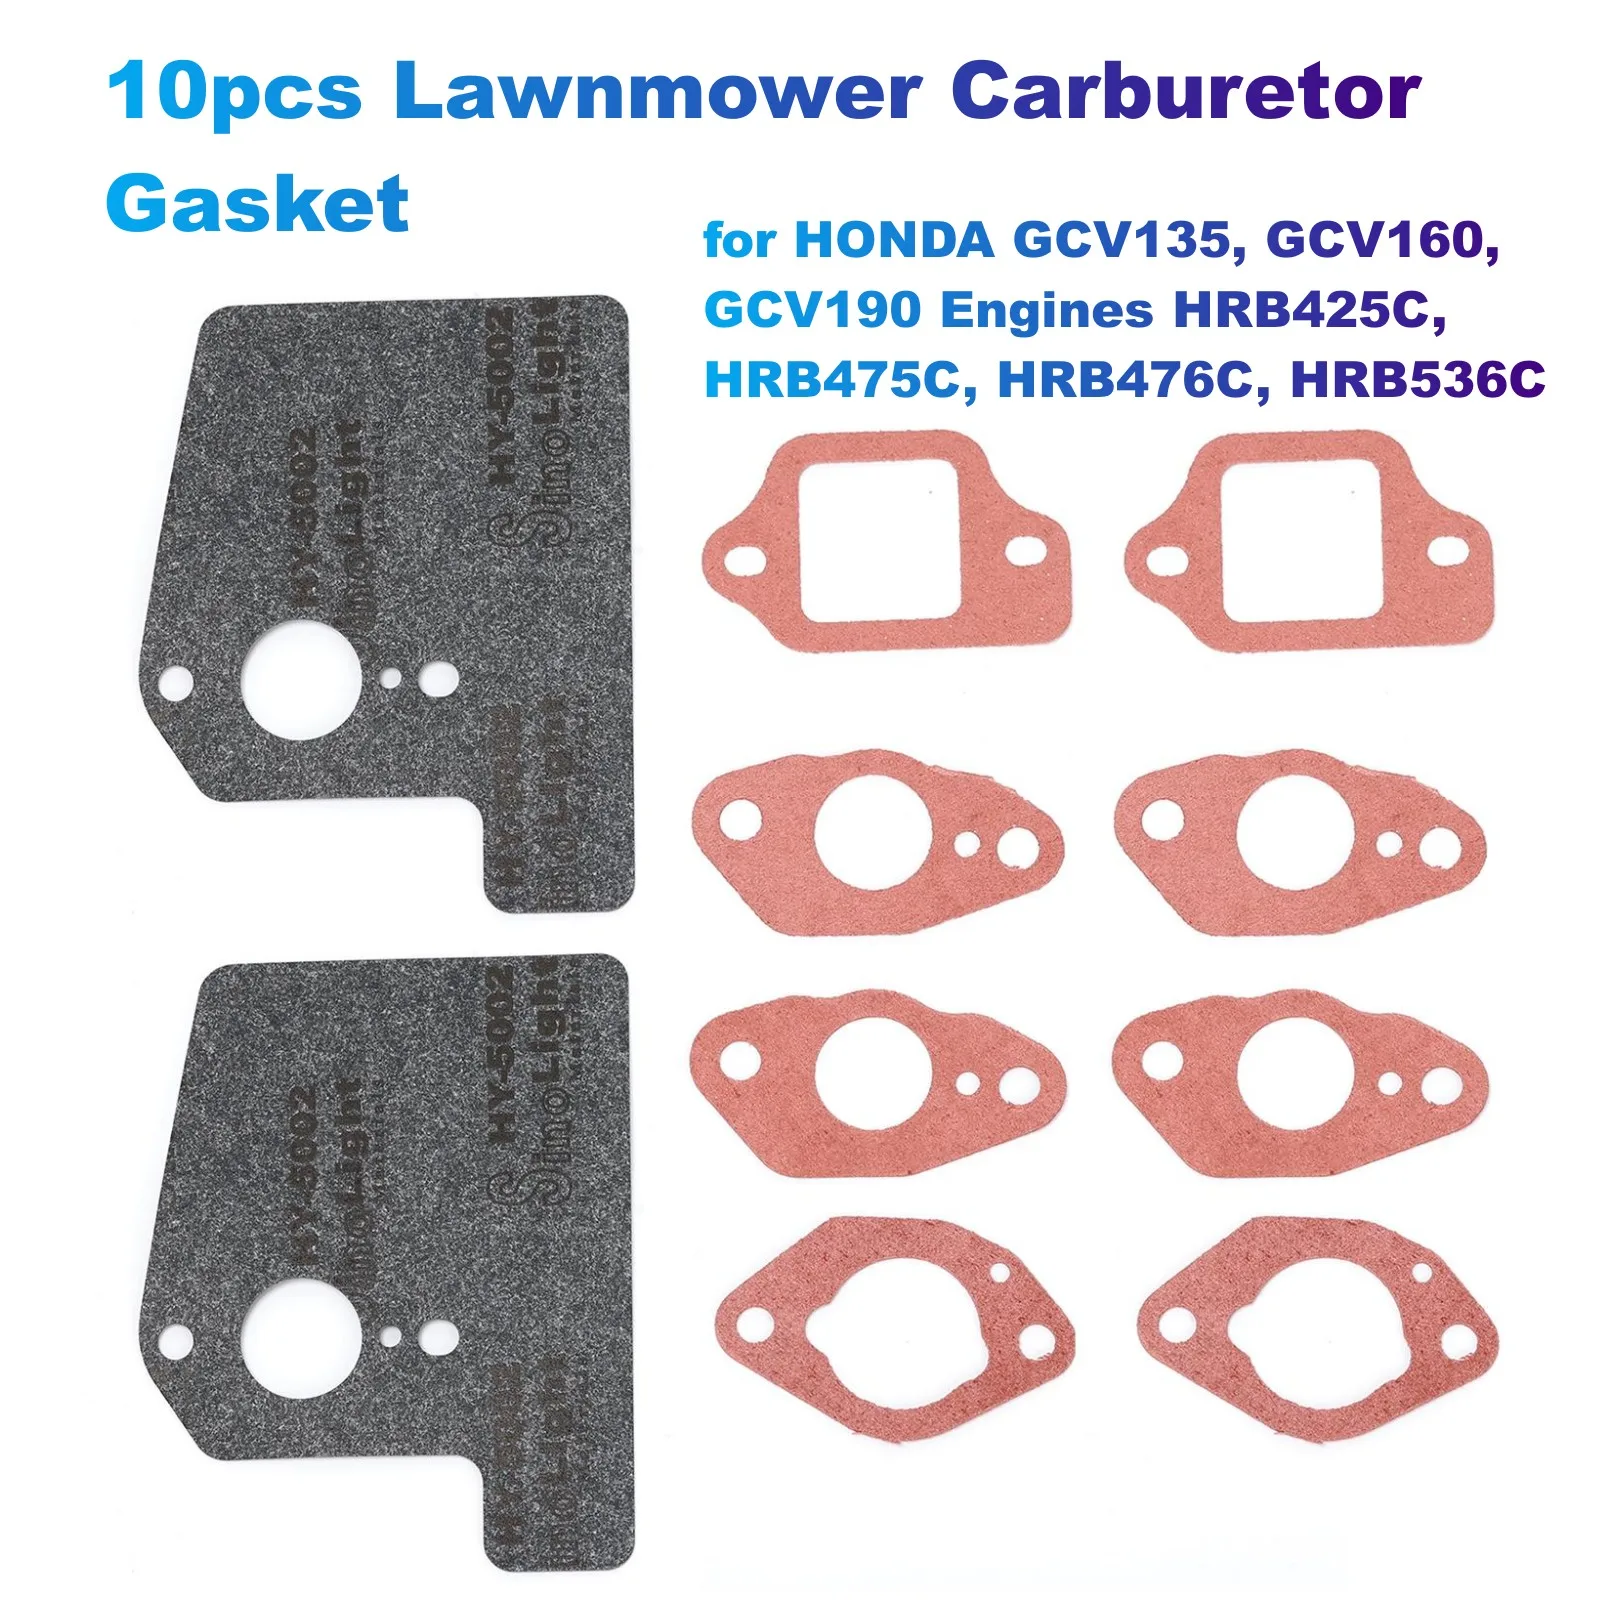 10pcs Lawnmower Carburetor Gasket for HONDA GCV135, GCV160, GCV190 Engines HRB425C, HRB475C, HRB476C, HRB536C (16221883800) carburetor gasket repair kit for honda gcv135 gcv160 hrb425c hrb475c hrb476c hrb536c hrg536engine lawn mower motor carby replace